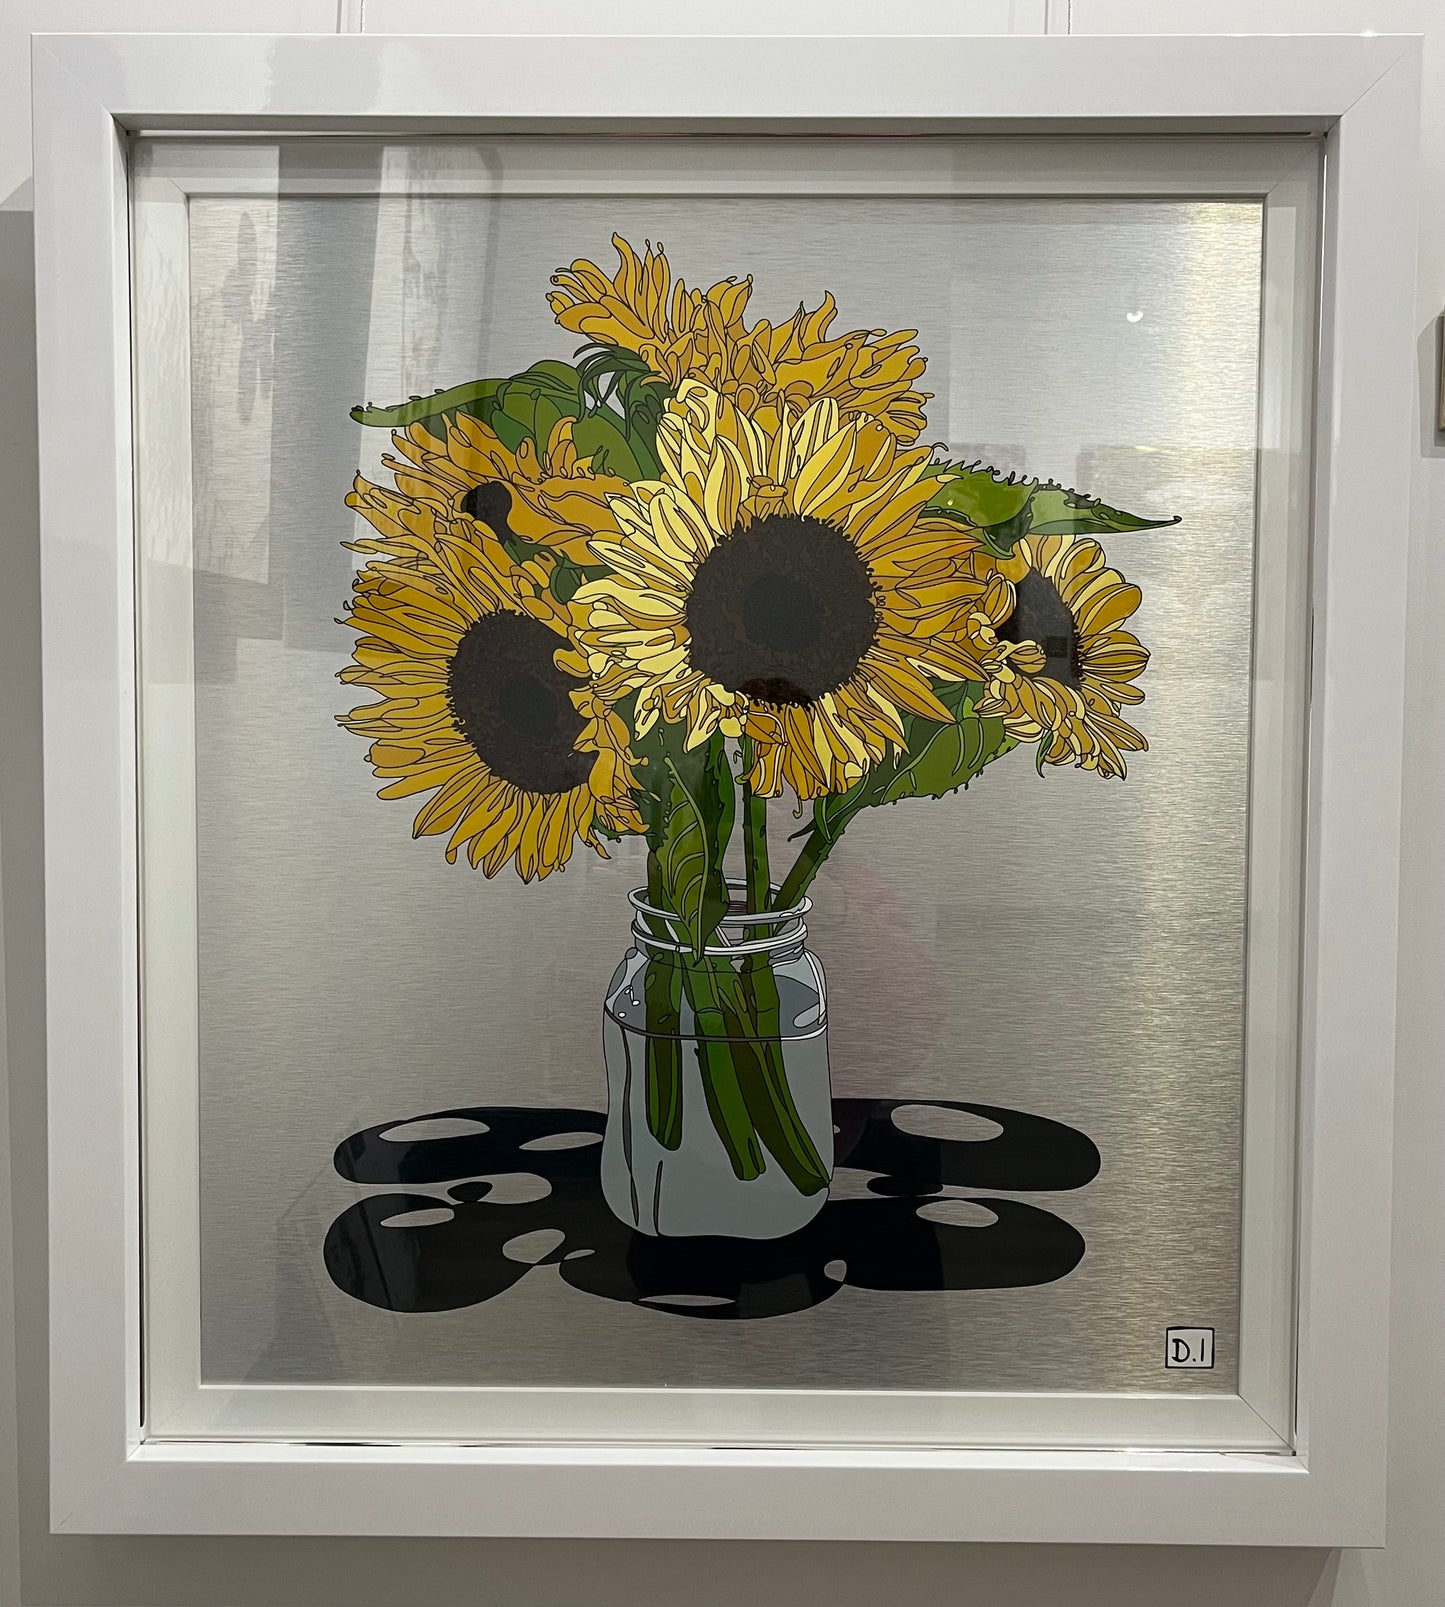 Sunflowers by Dylan Izaak